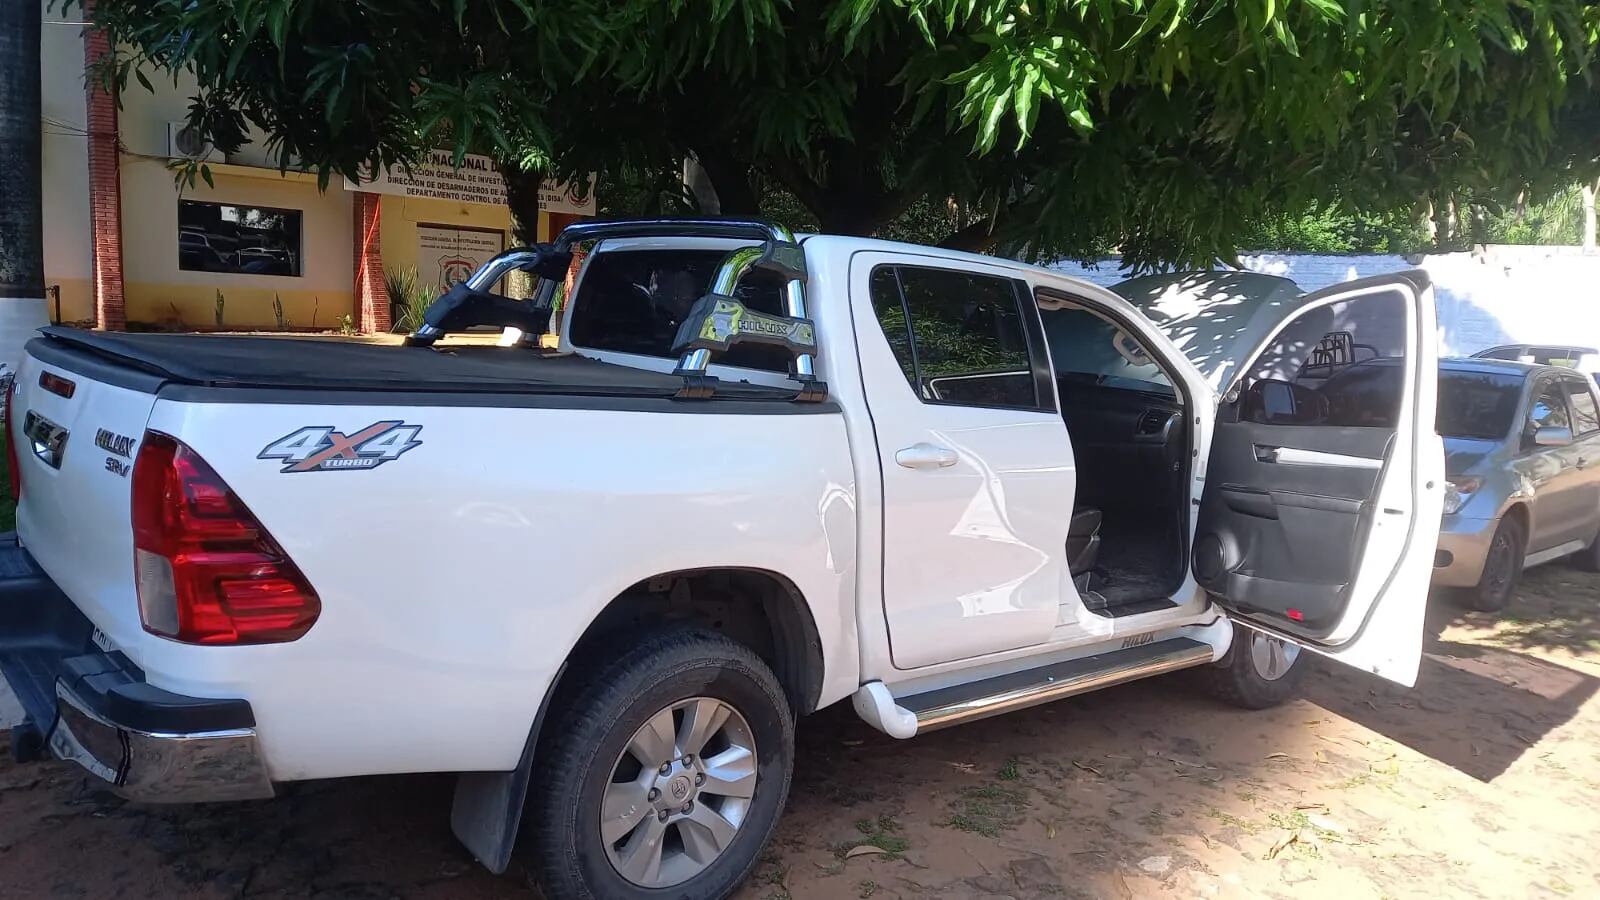 Vehículos robados en Brasil y revendidos en Paraguay: autoridades buscan agilizar procesos